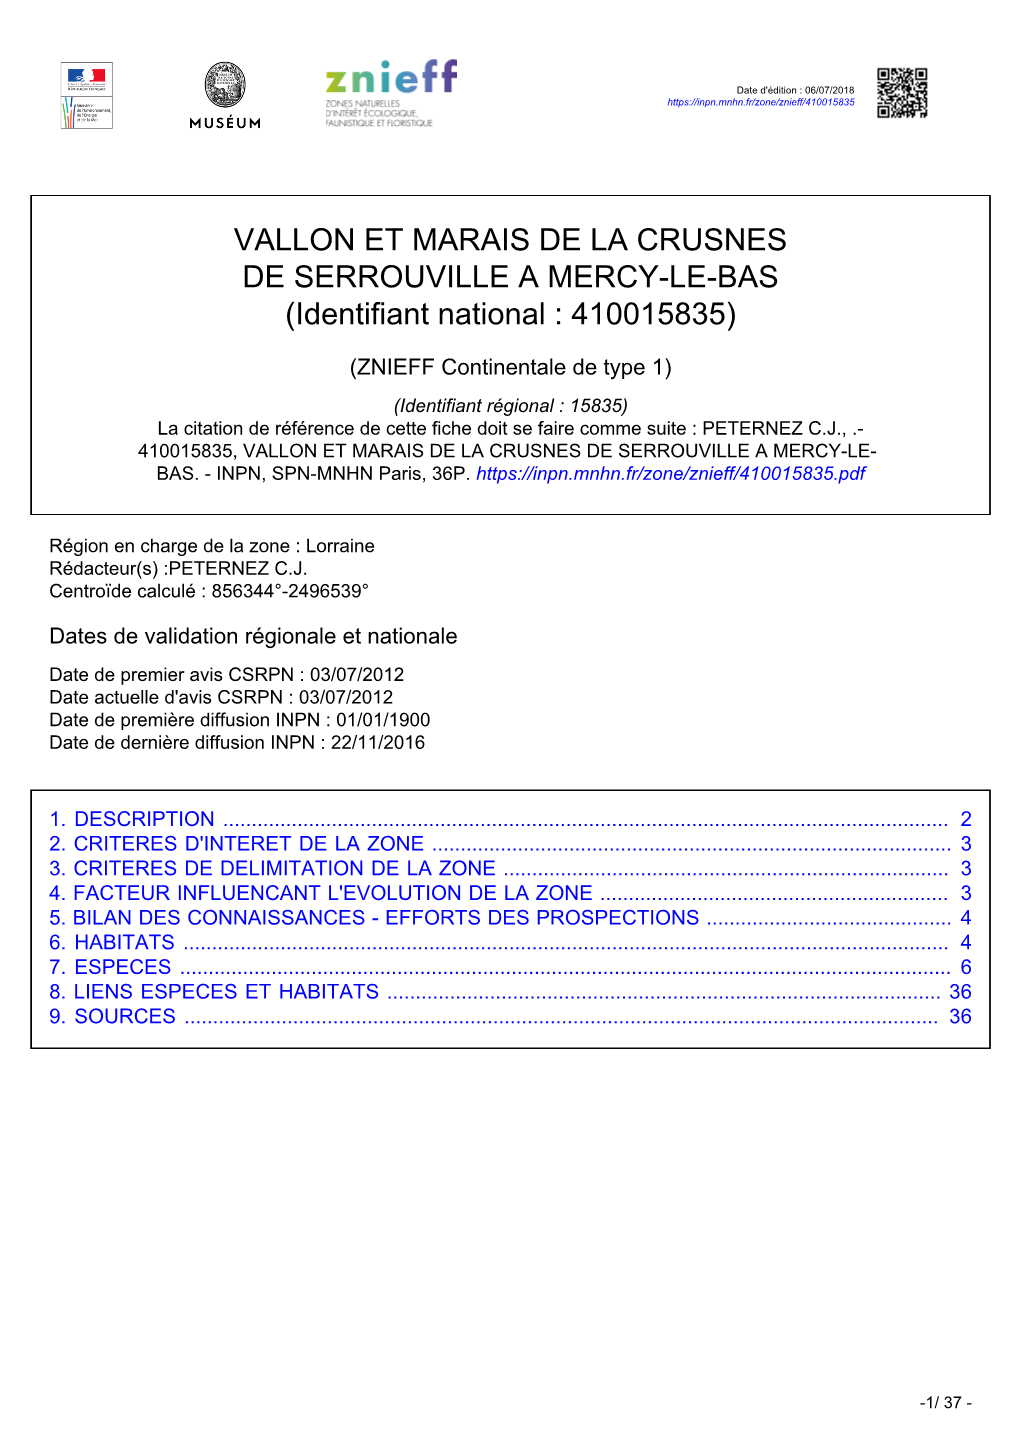 VALLON ET MARAIS DE LA CRUSNES DE SERROUVILLE a MERCY-LE-BAS (Identifiant National : 410015835)